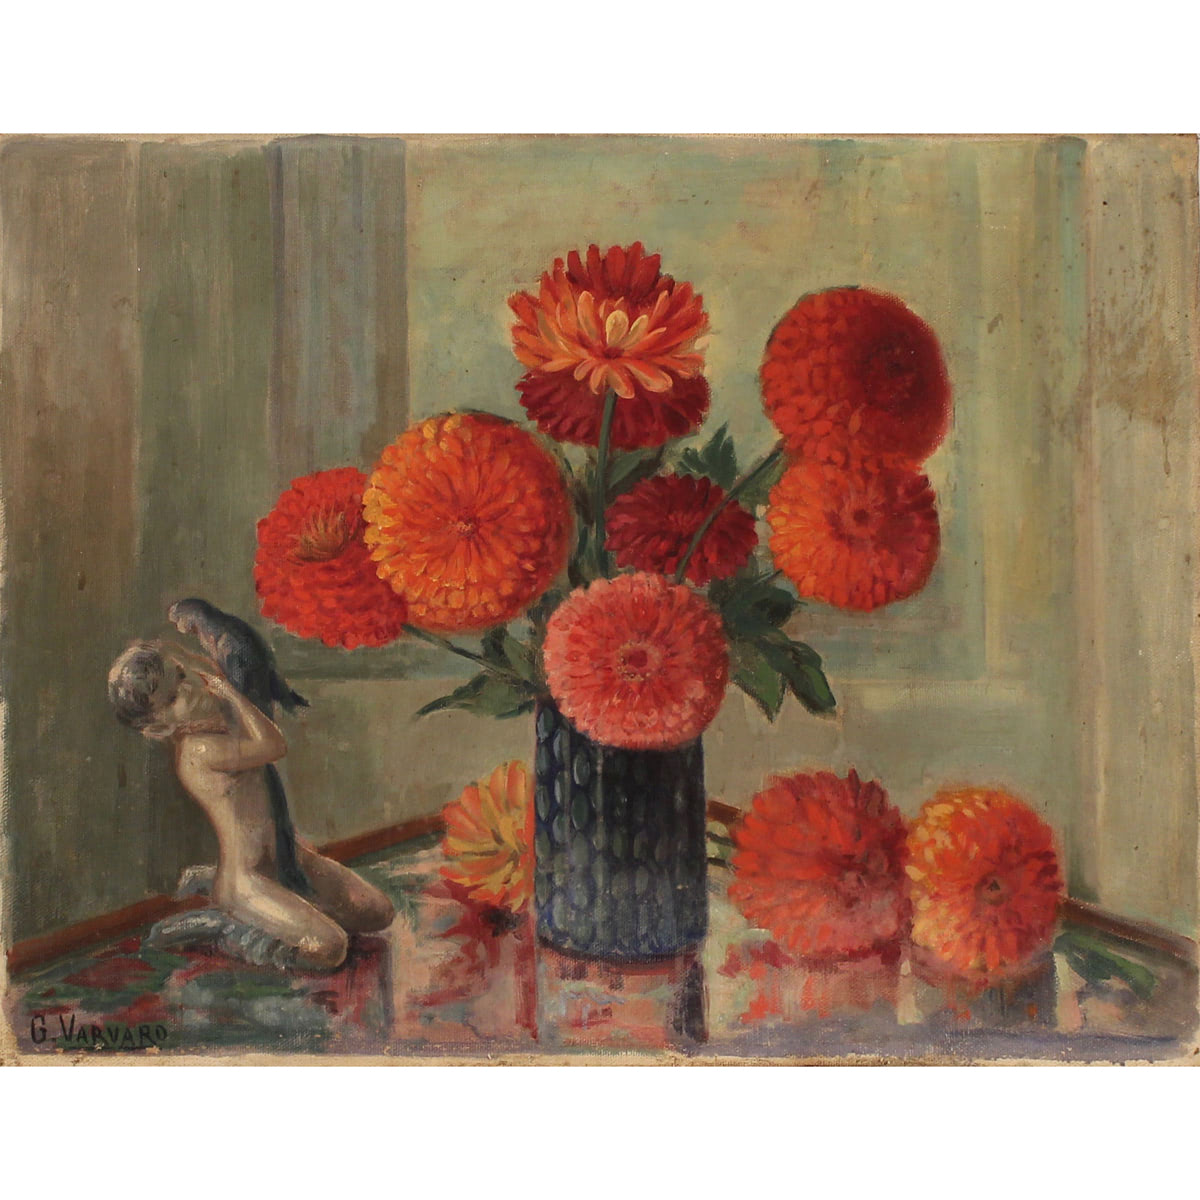 GIOVANNI VARVARO (1888/1973) "Natura morta di fiori" - "Still life of flowers"